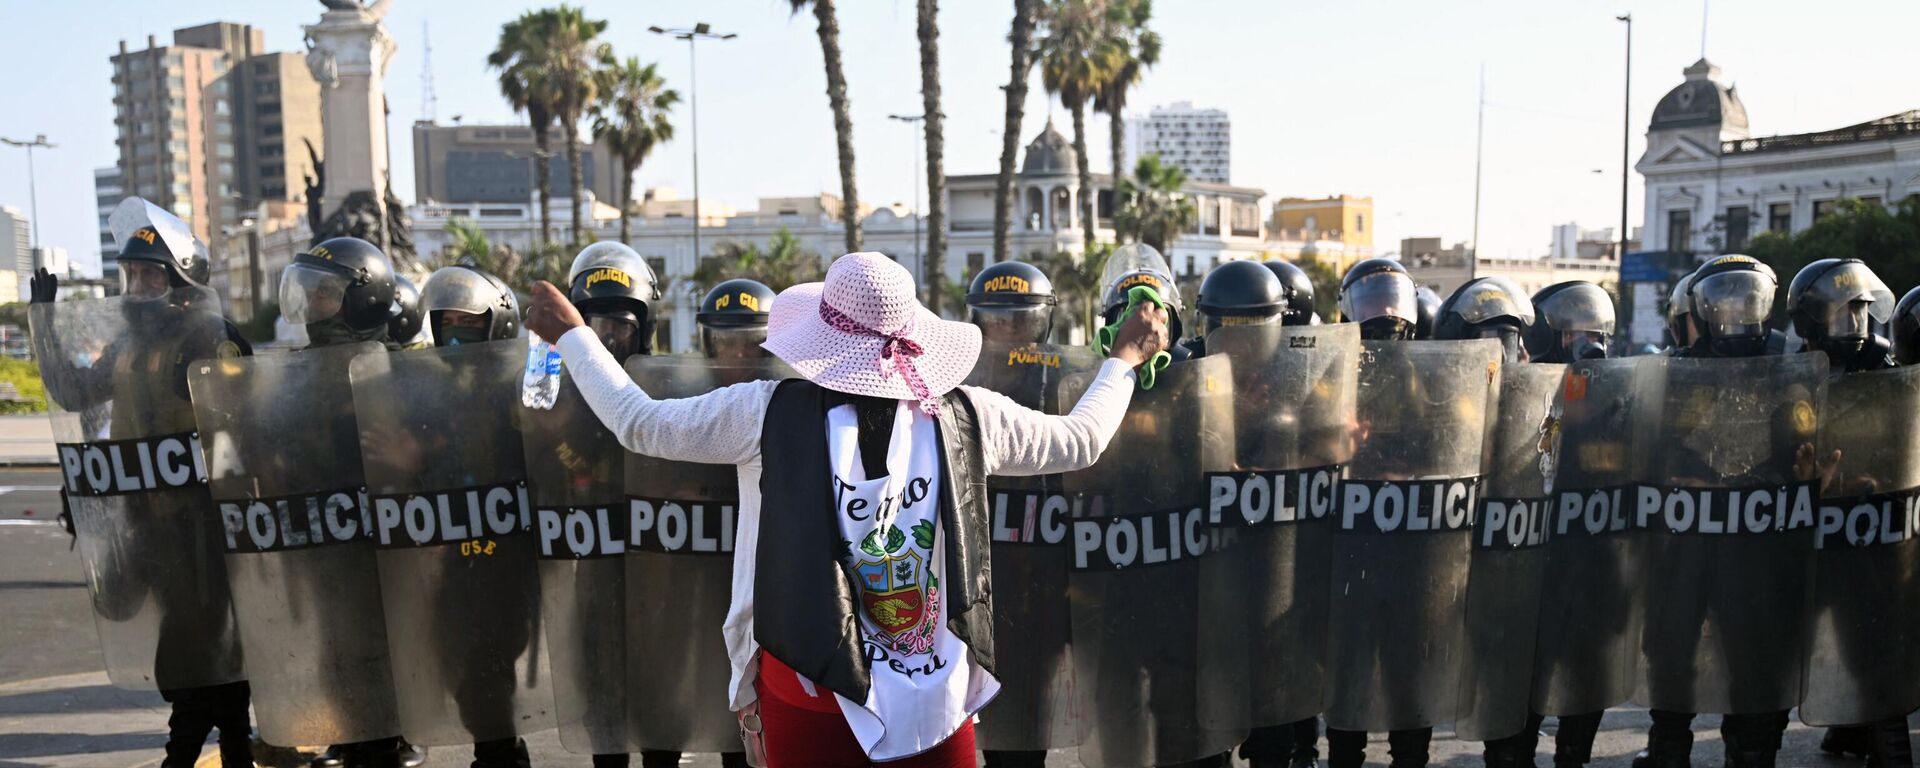 Una mujer enfrenta a la policía en Lima durante una protesta por la renuncia de la presidenta Dina Boluarte. - Sputnik Mundo, 1920, 24.01.2023